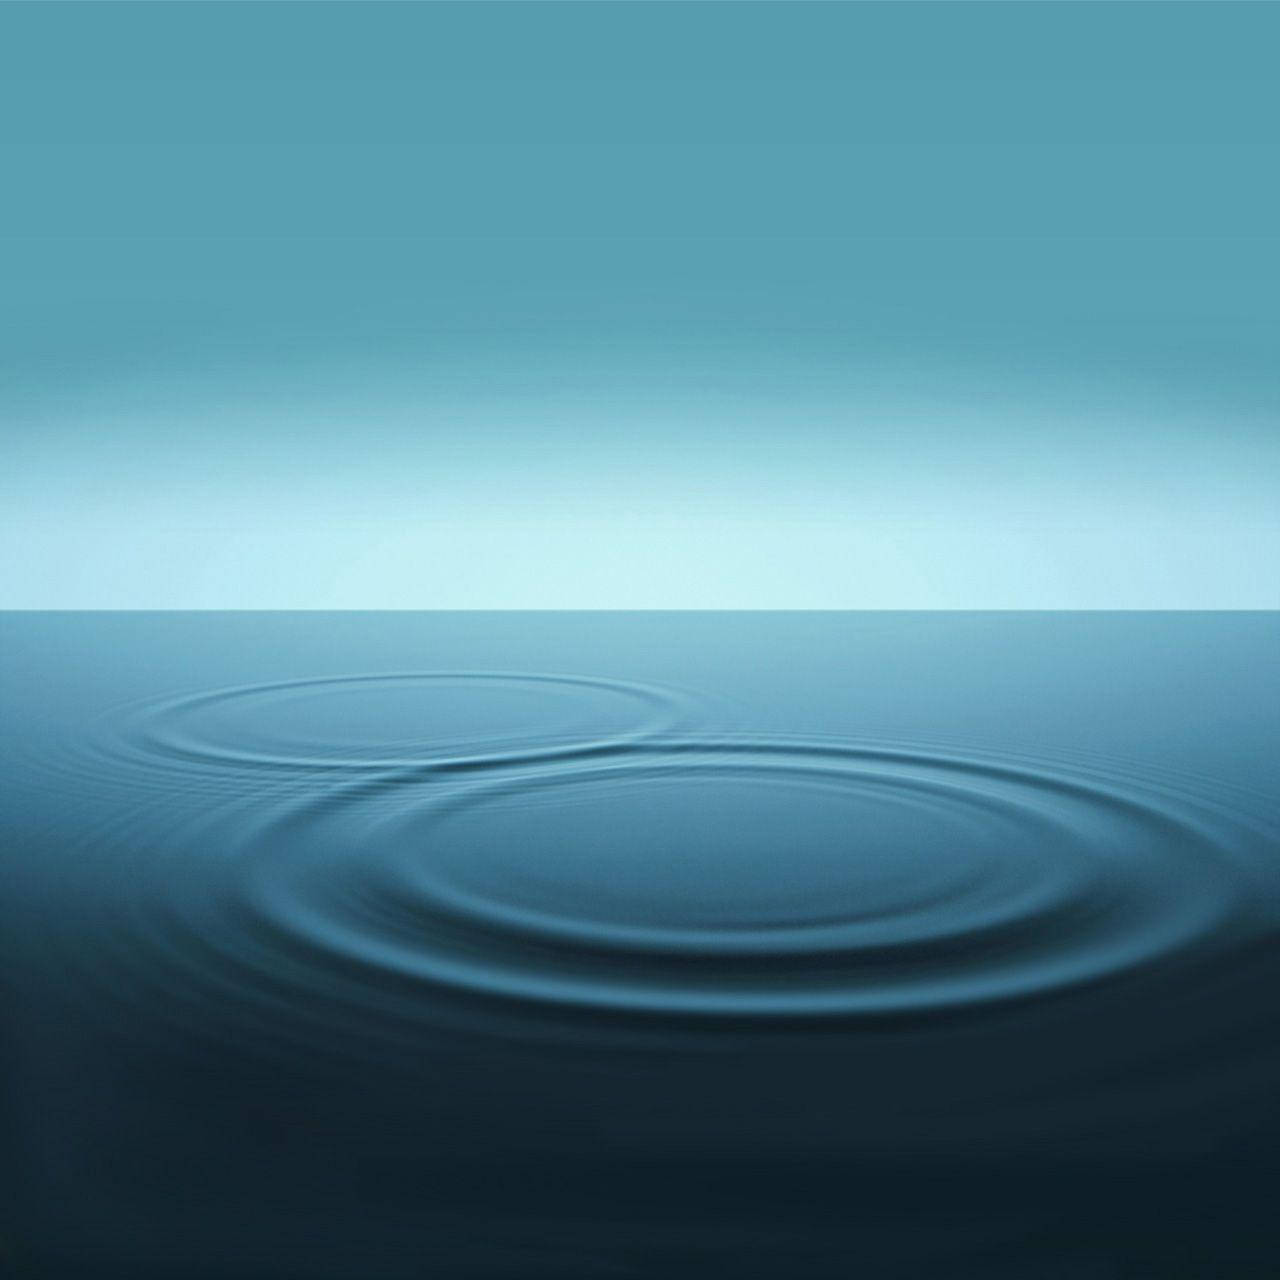 Skvalpandevågor På Vatten Som Bakgrundsbild På Galaxy-surfplatta. Wallpaper